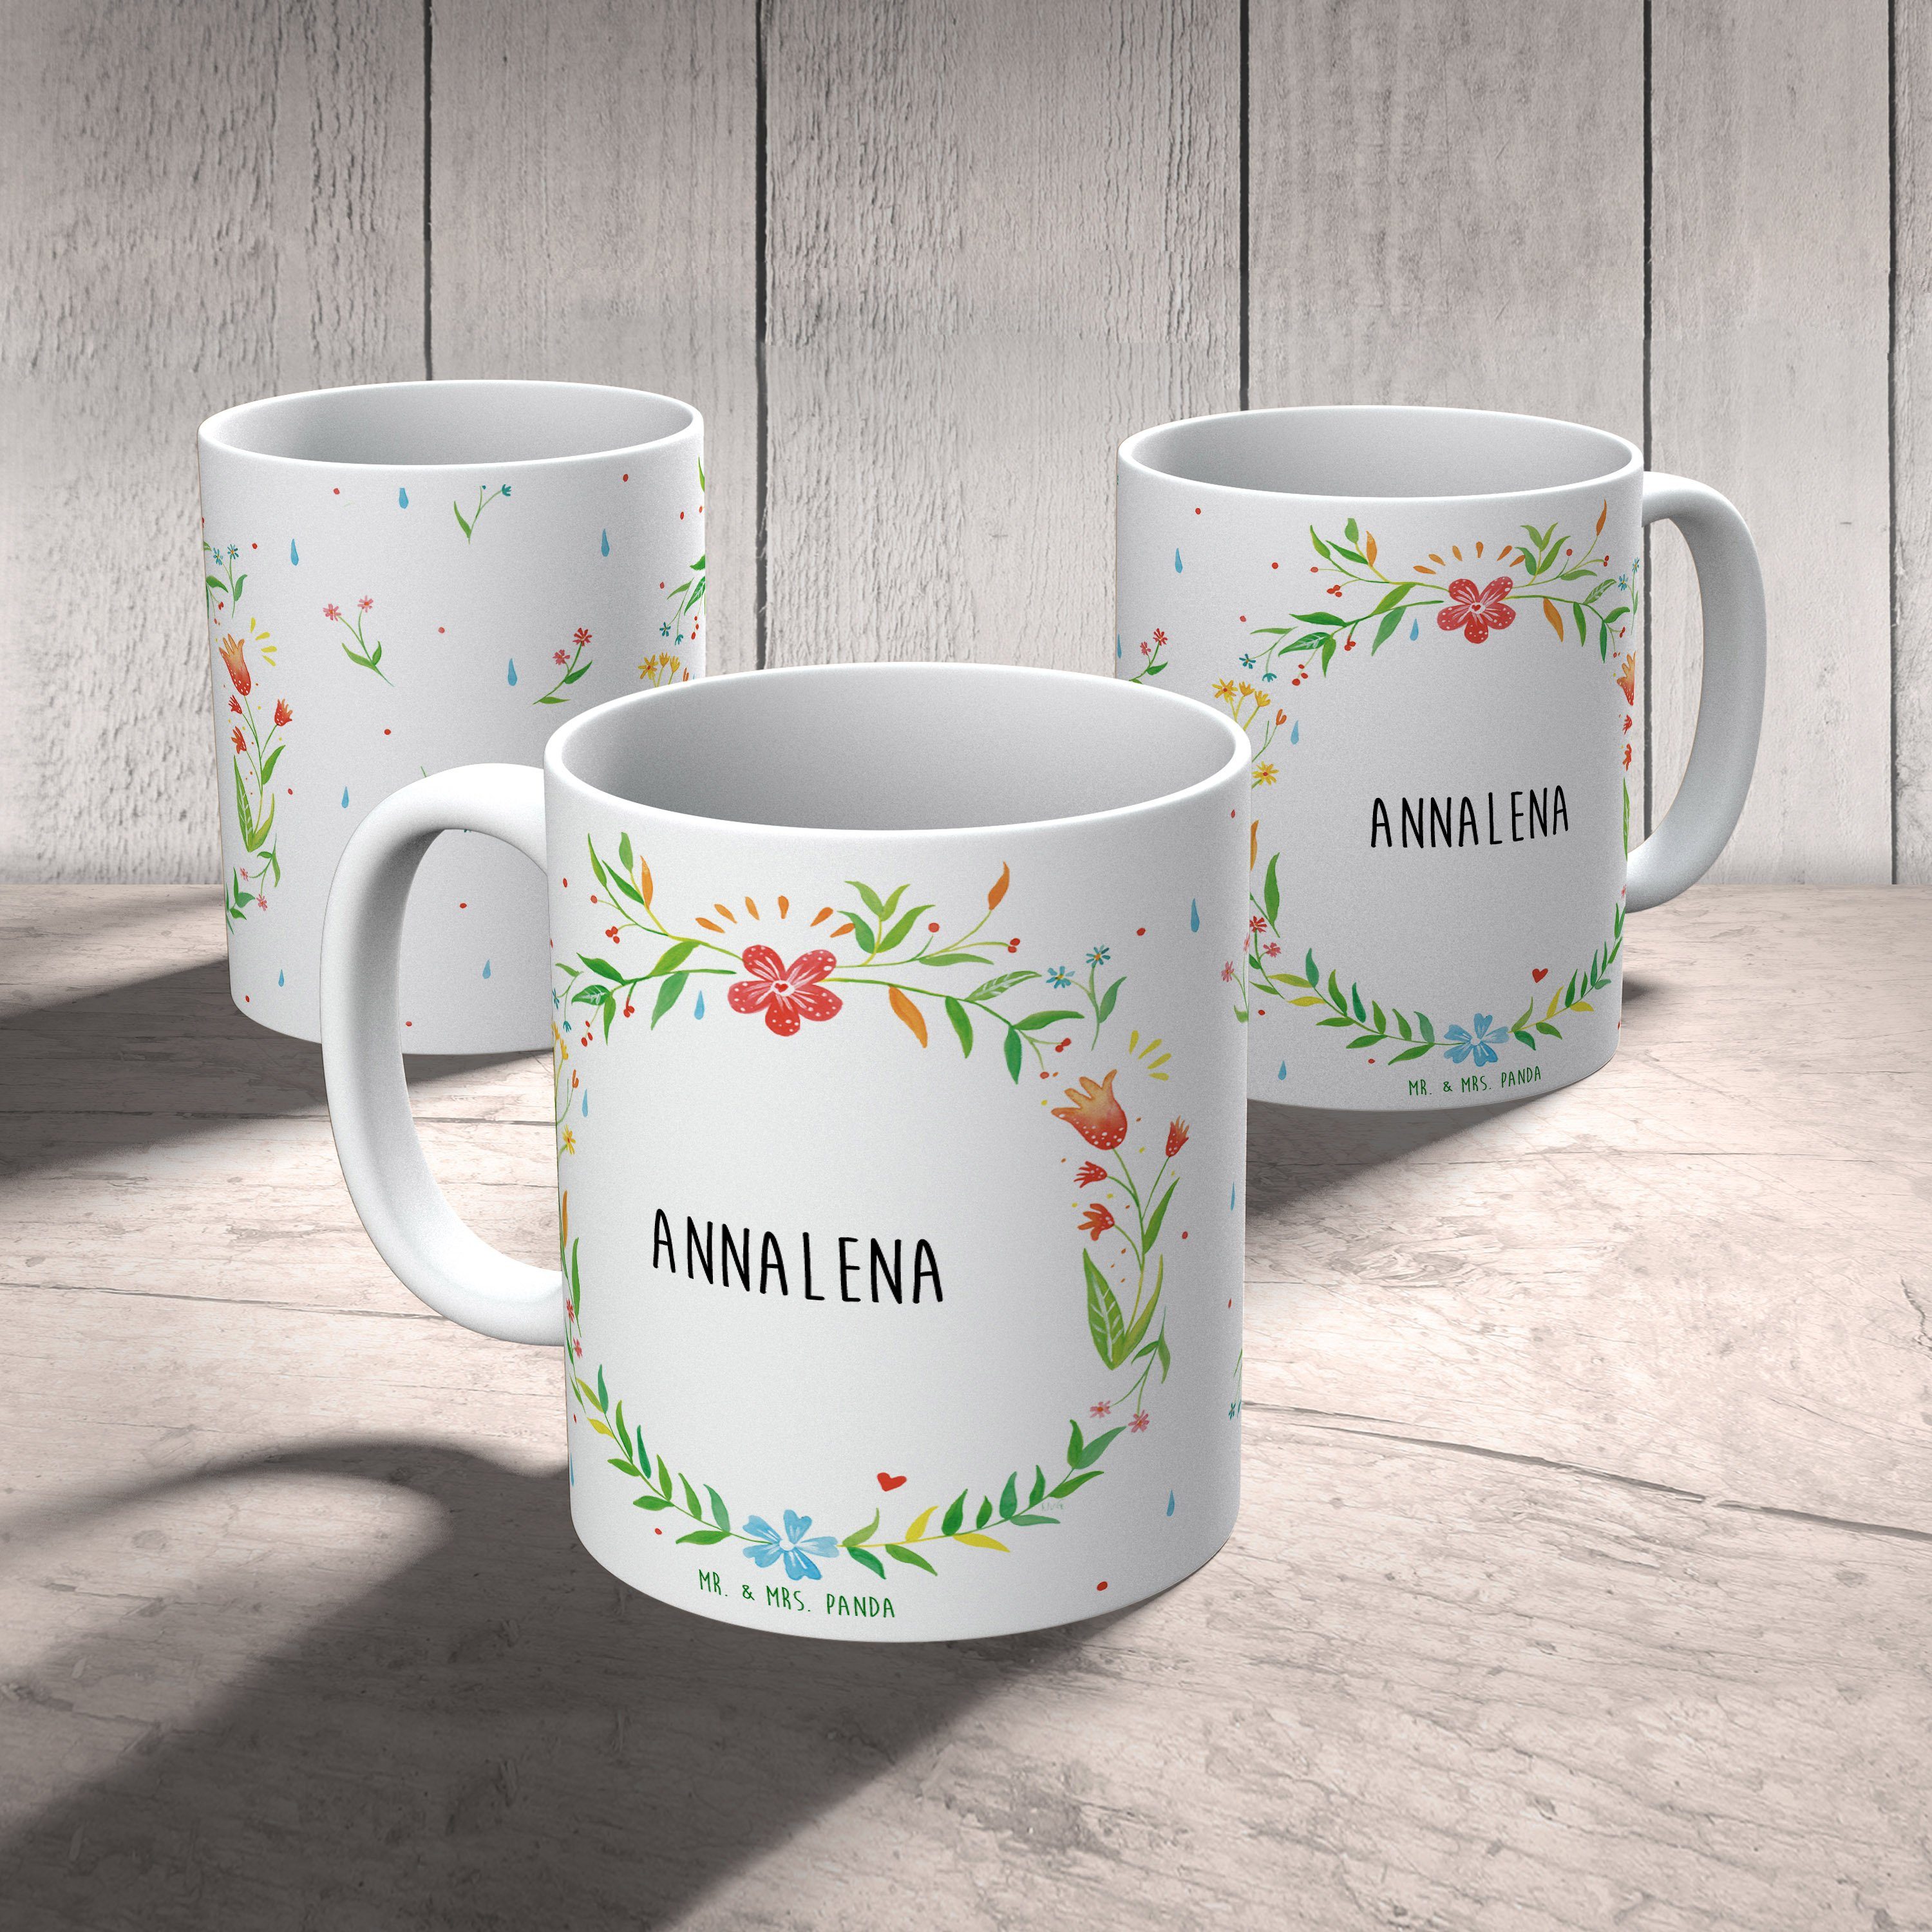 & Keramik Kaffeetasse, Teeta, Keramiktasse, Tasse, Annalena Geschenk, - Panda Geschenk Mrs. Mr. Tasse